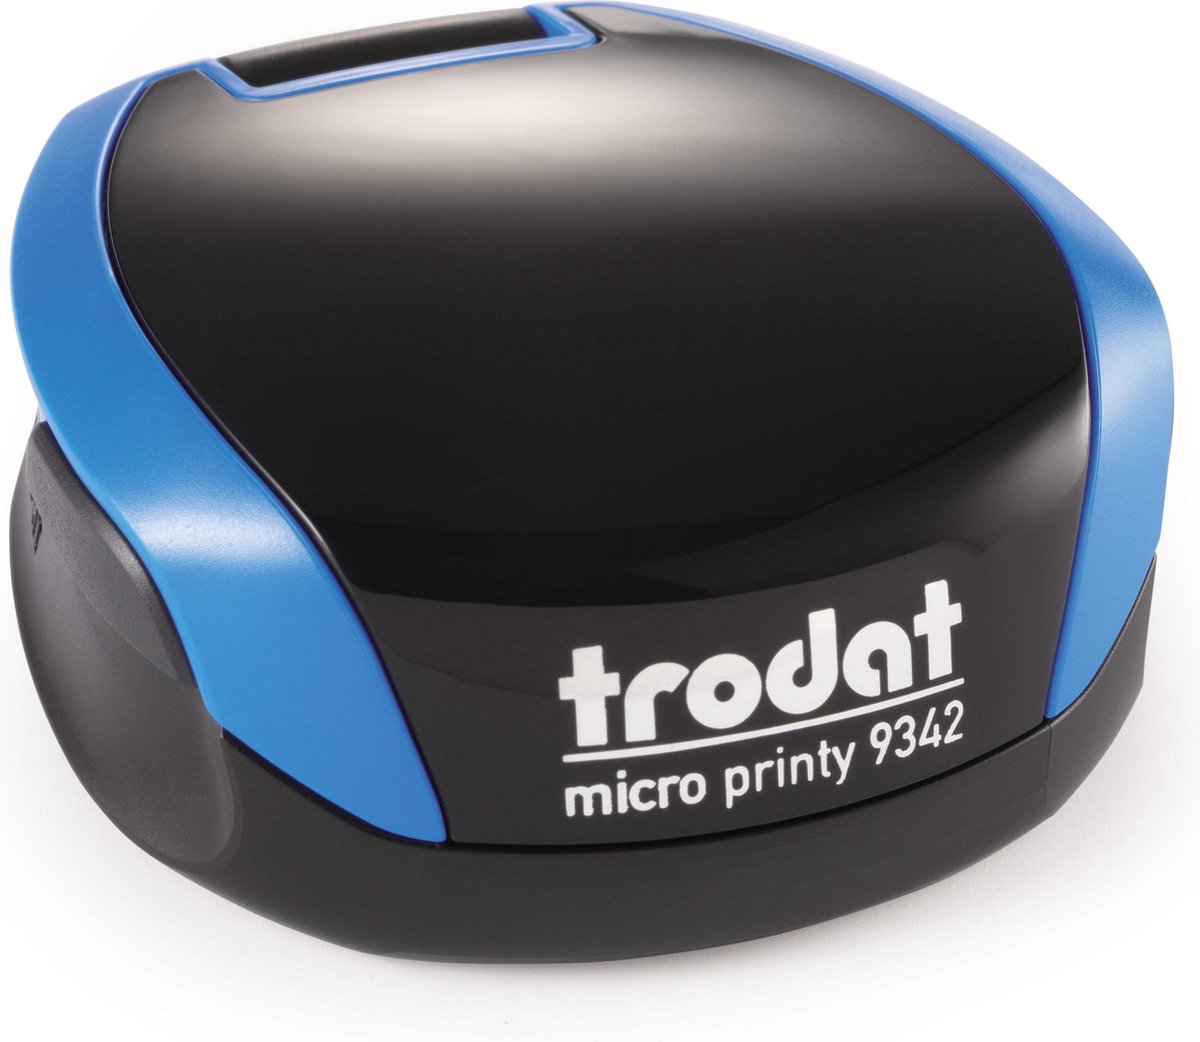 Trodat Micro Printy 9342 blauw/blauw ø 42 mm incl. voucher voor tekst of logo - Trodat